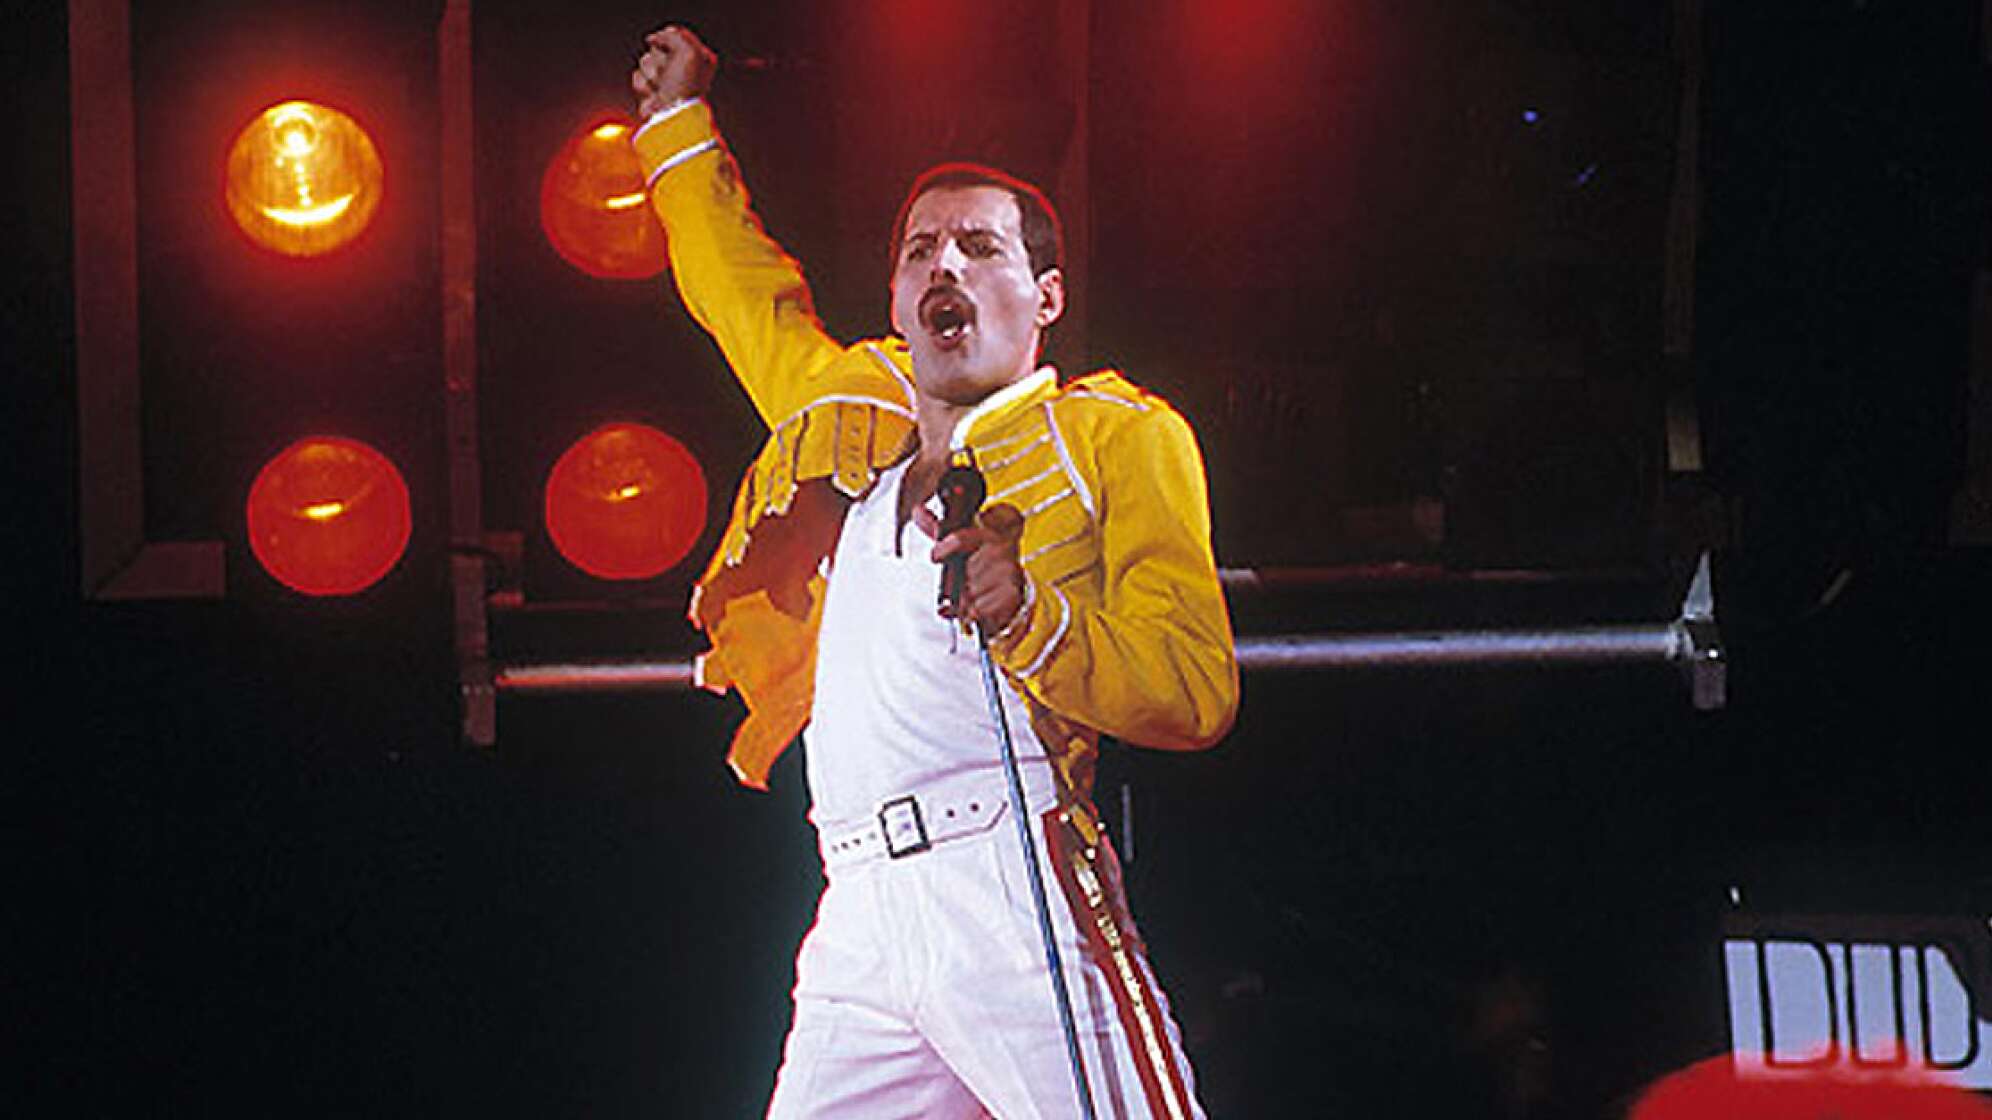 Freddie Mercury am schreien